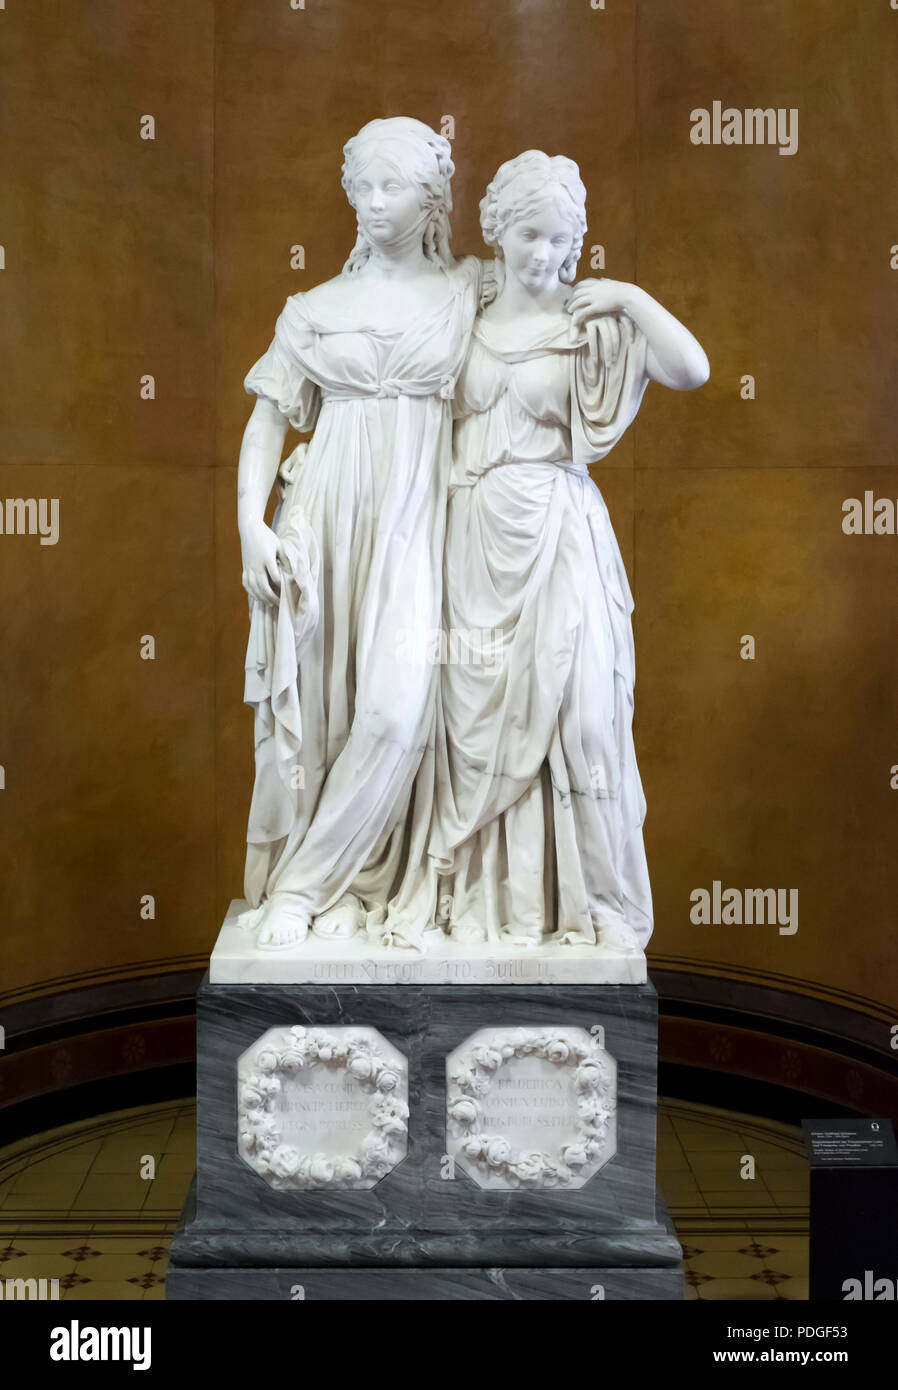 Saal mit Klassizistischen Skulpturen, Johann Gottfried Schadow: Doppelstandbild der Prinzessinnen Luise und Friederike von Preußen 1795-1797 Stock Photo